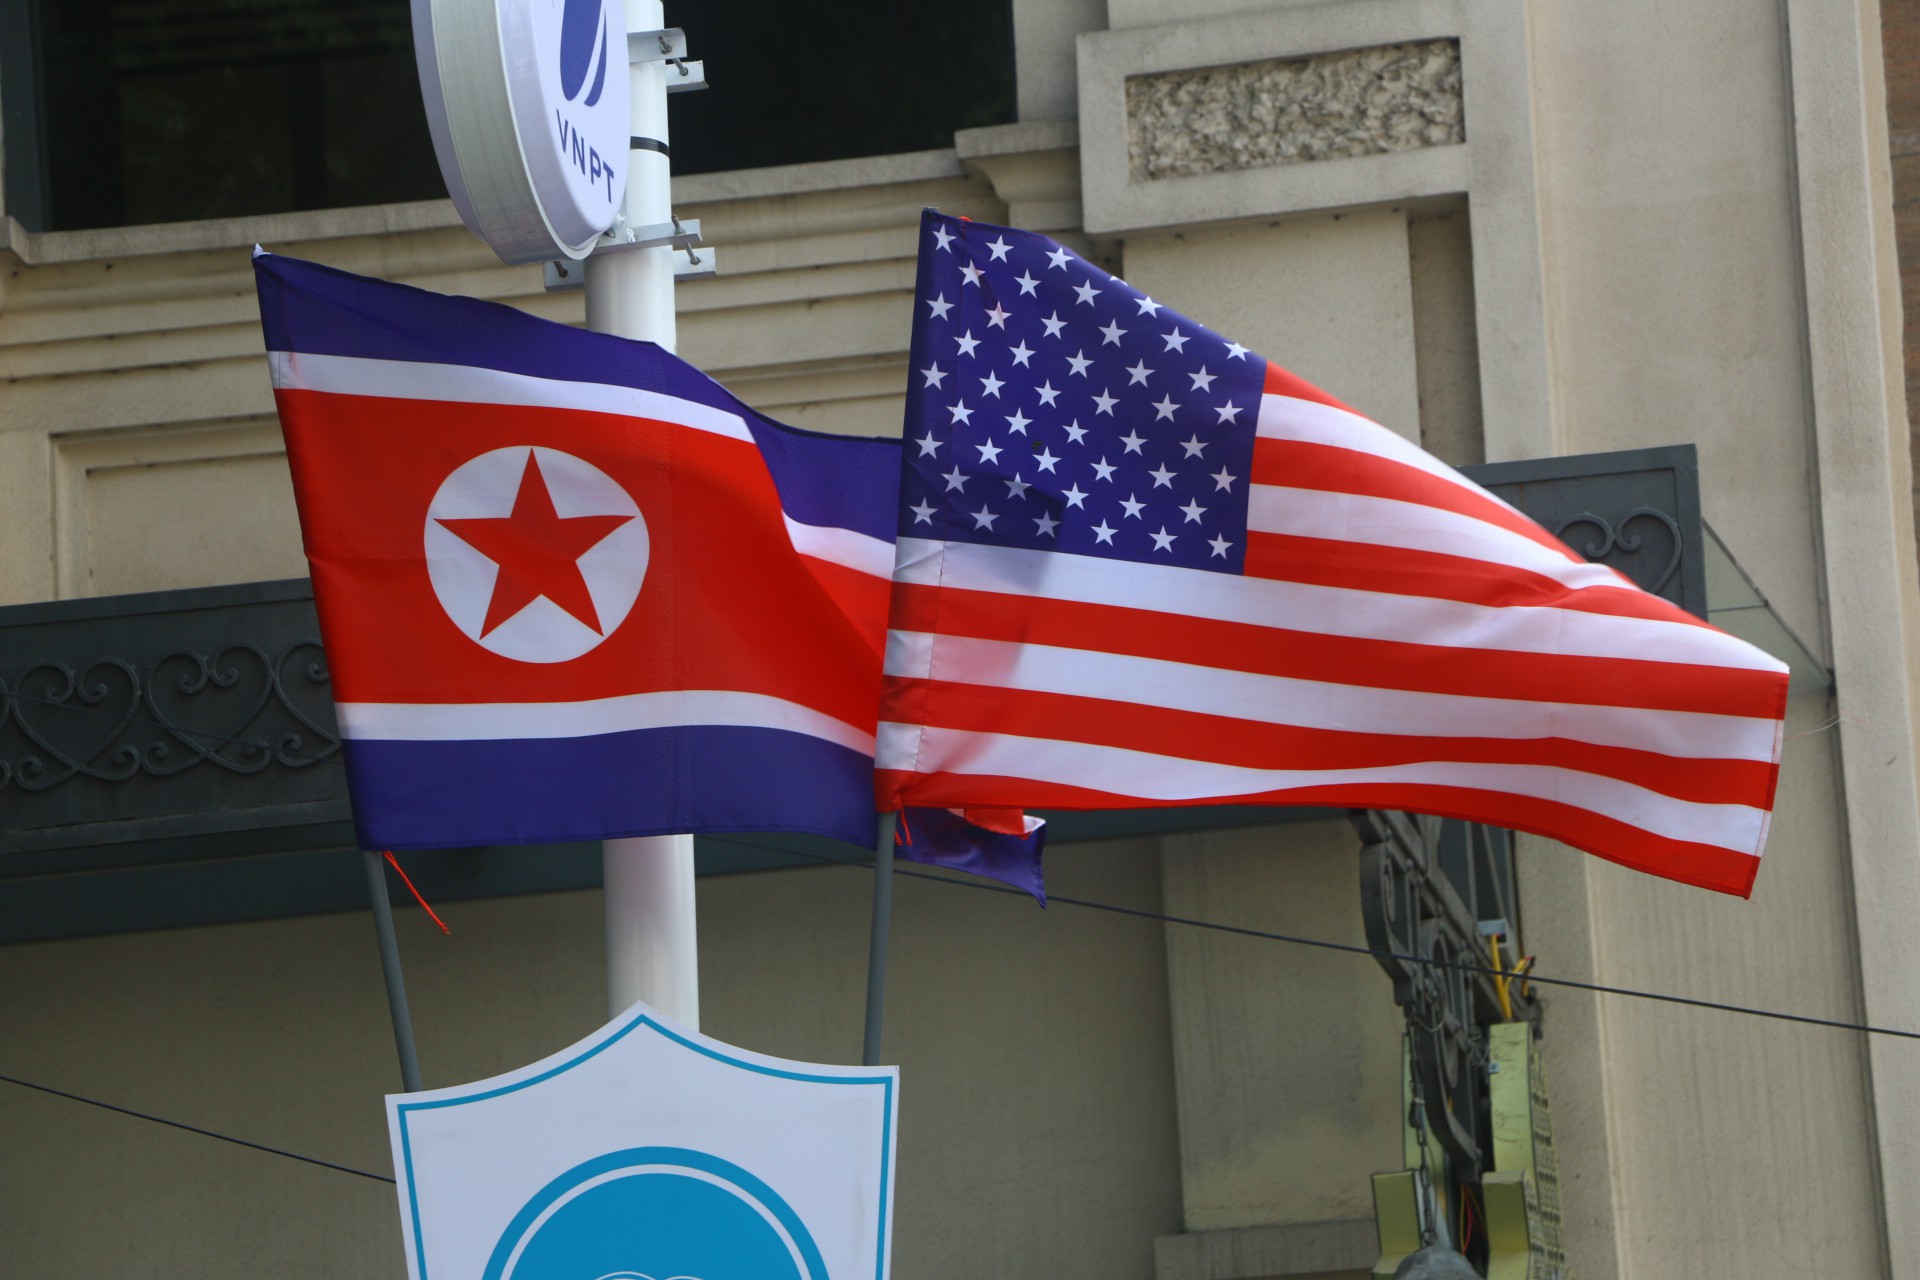 Cờ Mỹ - Triều Tiên: cờ Mỹ hải quân
Trong năm 2024, quan hệ giữa Mỹ và Triều Tiên thú vị hơn khi cờ Mỹ hải quân được tung bay tại bờ biển Triều Tiên. Hình ảnh này cho thấy sự tương tác đang diễn ra giữa hai quốc gia, mở ra cơ hội cho tương lai tốt đẹp hơn.